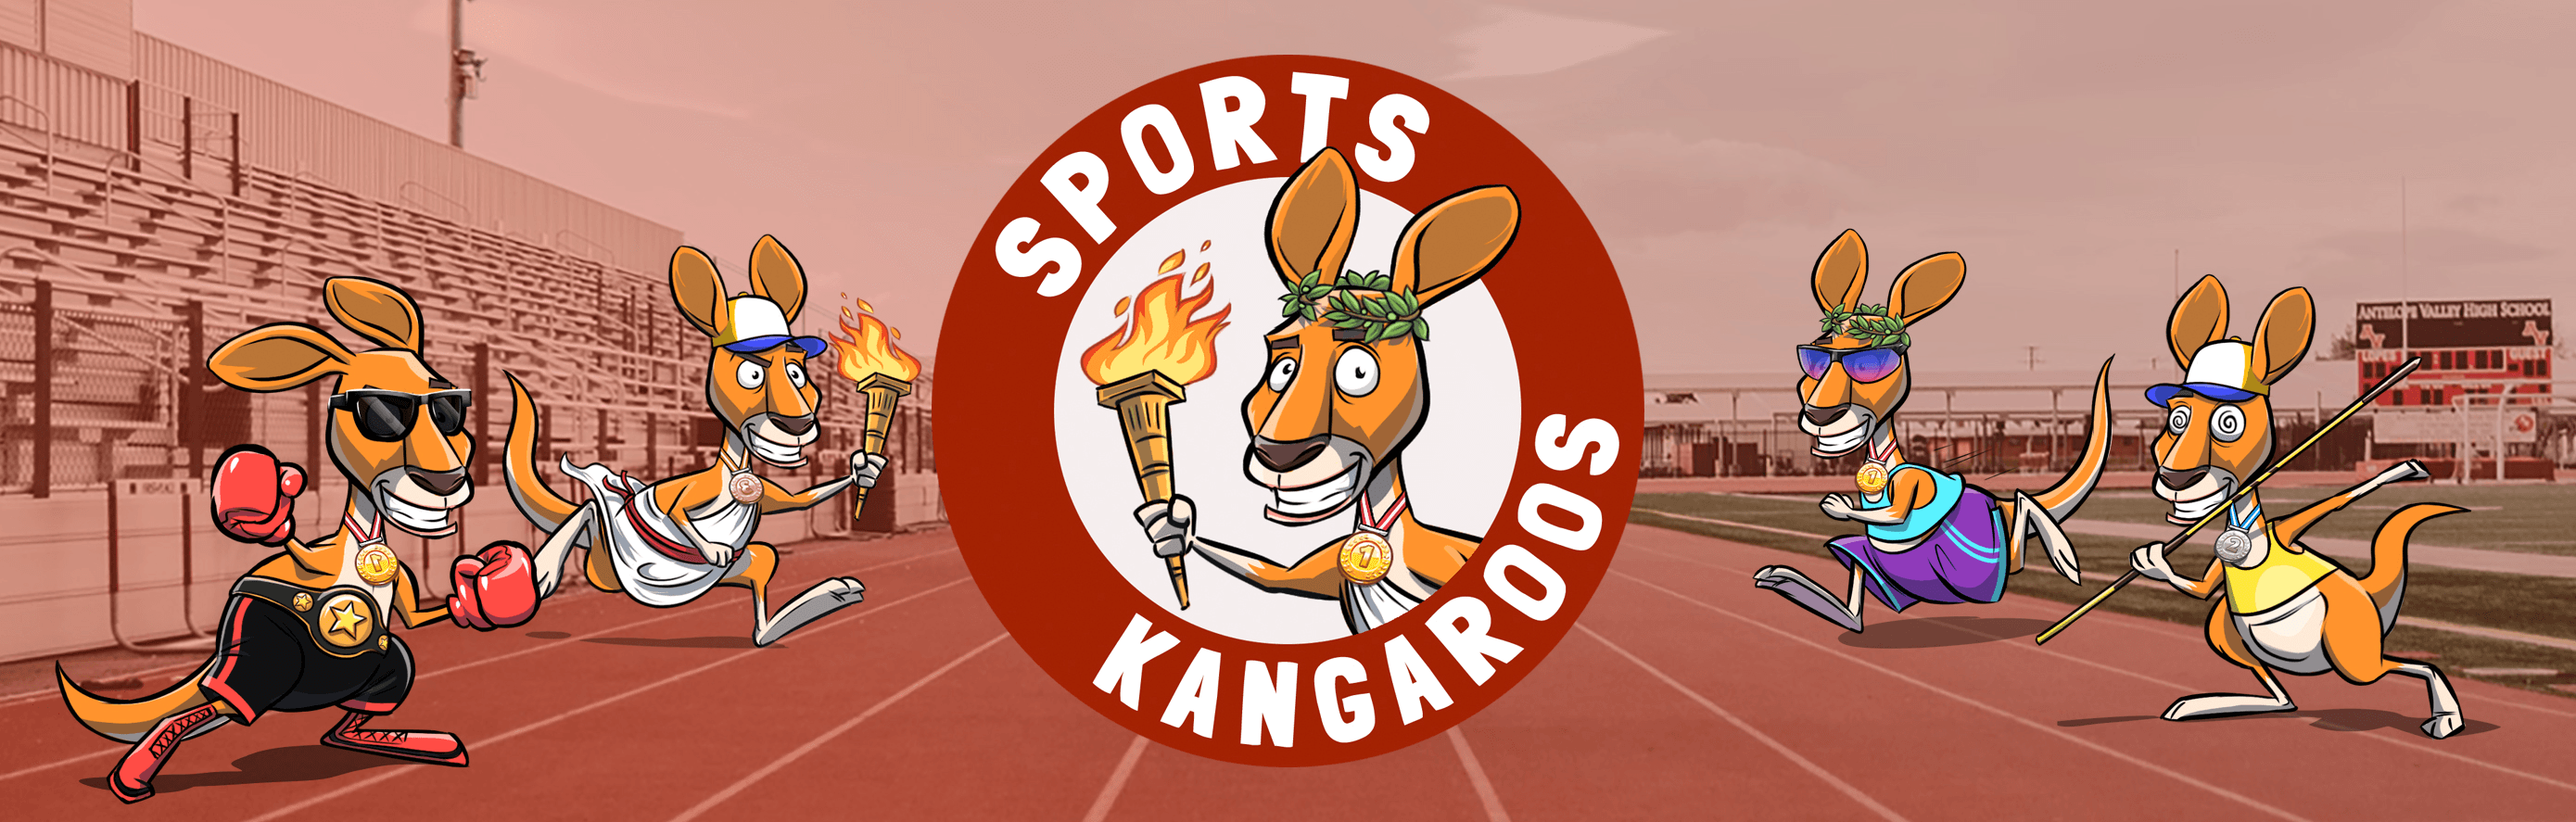 SportsKangaroos banner